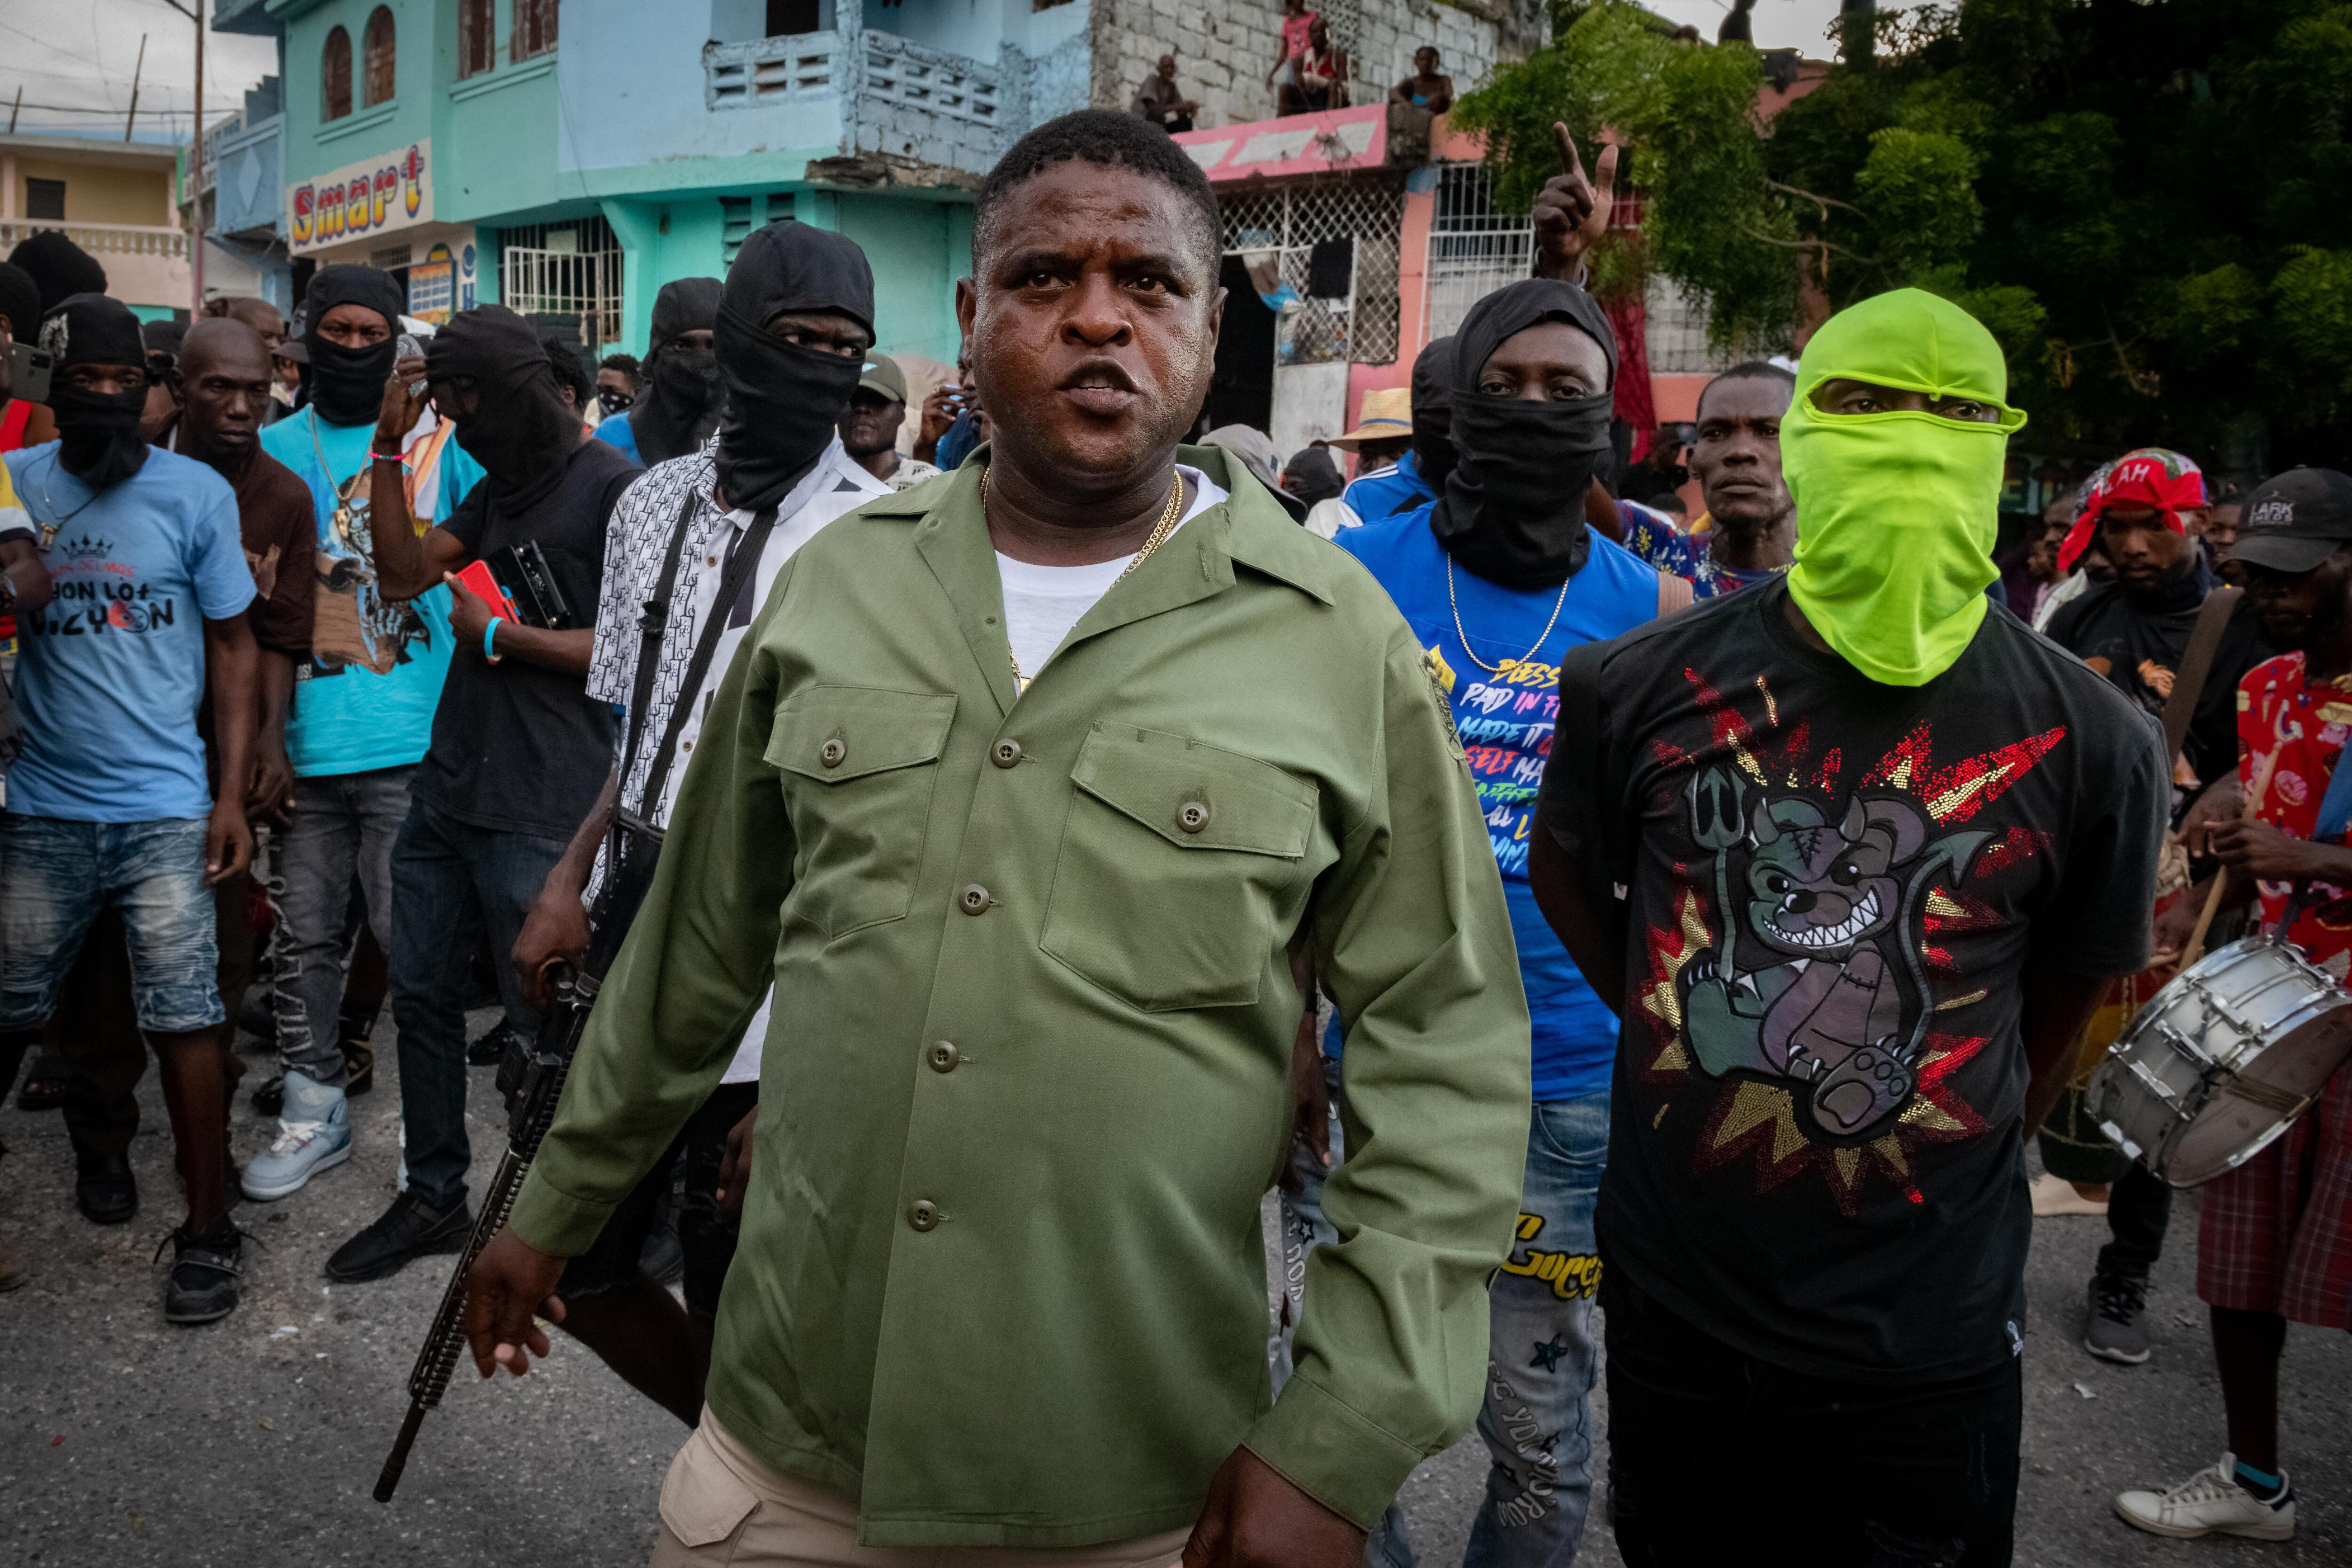 haití: pandillas toman control de cárcel donde están detenidos los colombianos